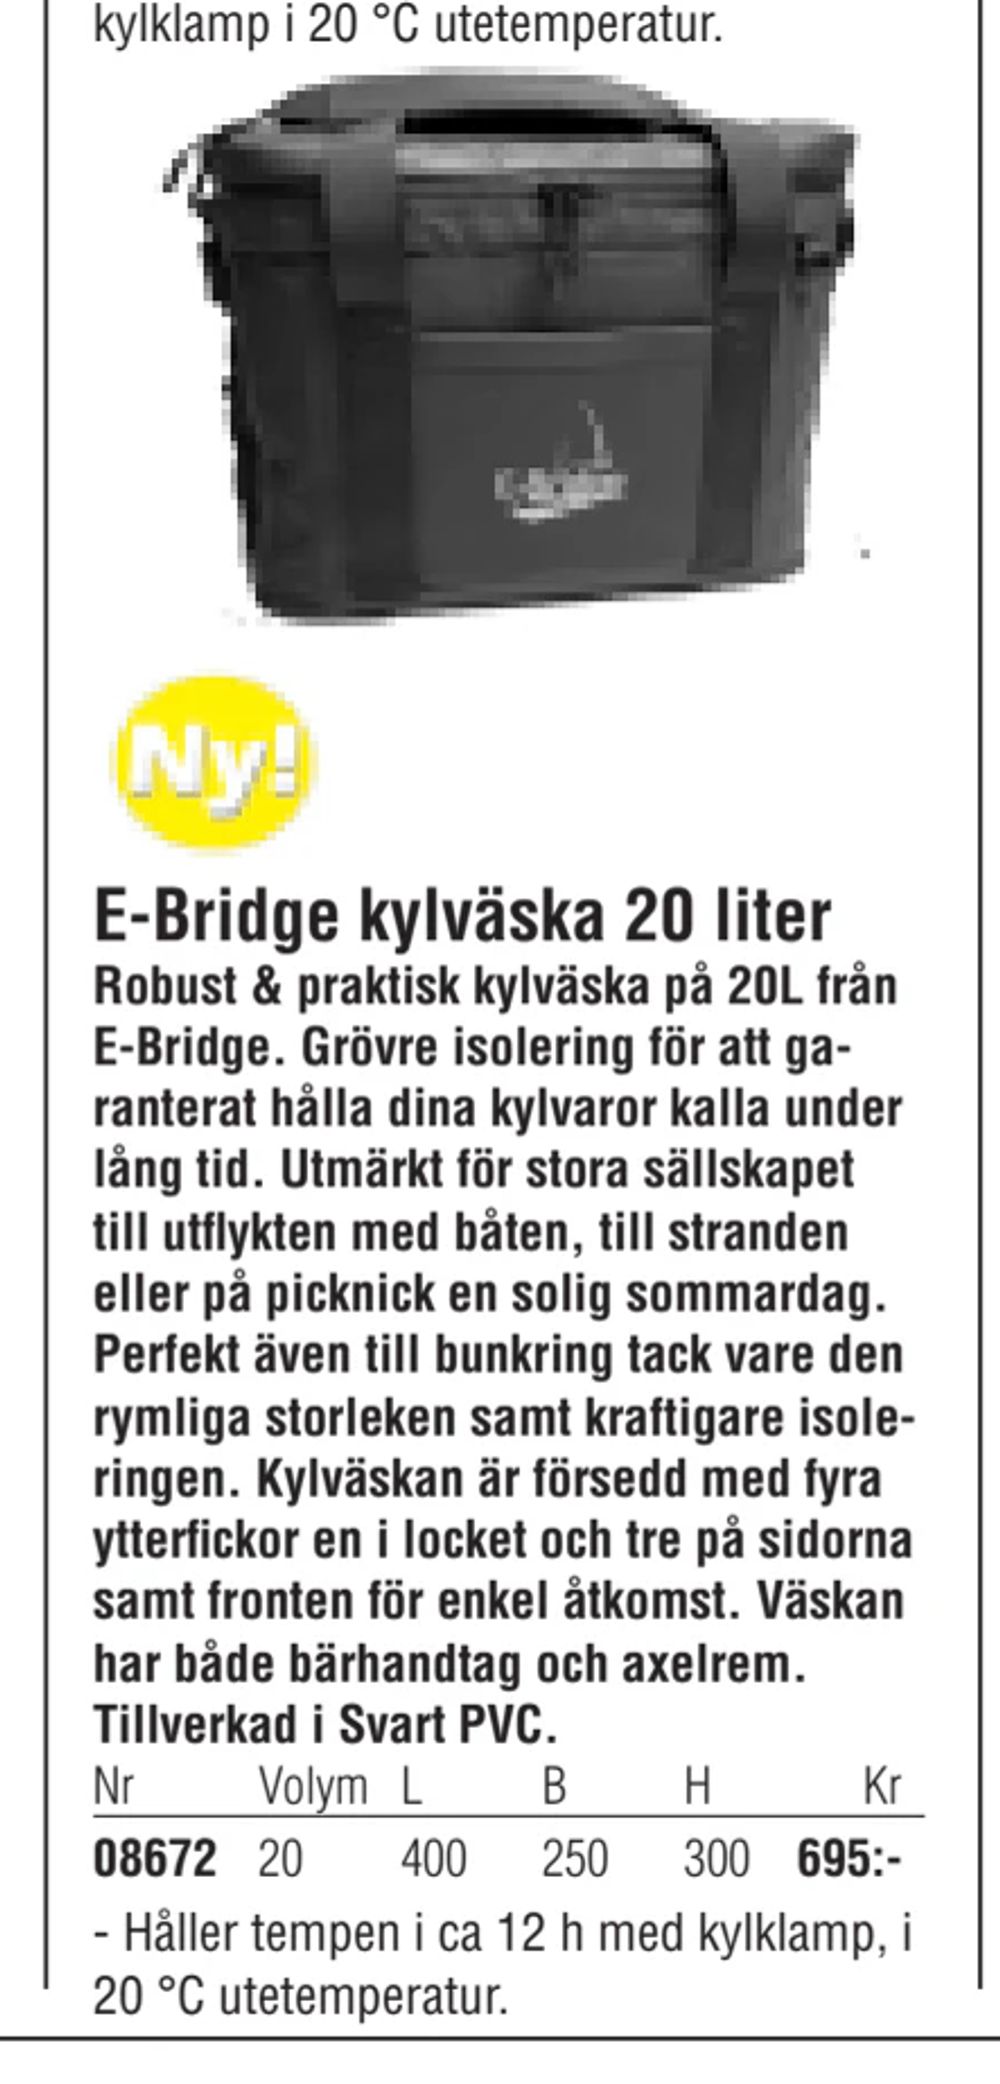 Erbjudanden på E-Bridge kylväska 20 liter från Erlandsons Brygga för 695 kr